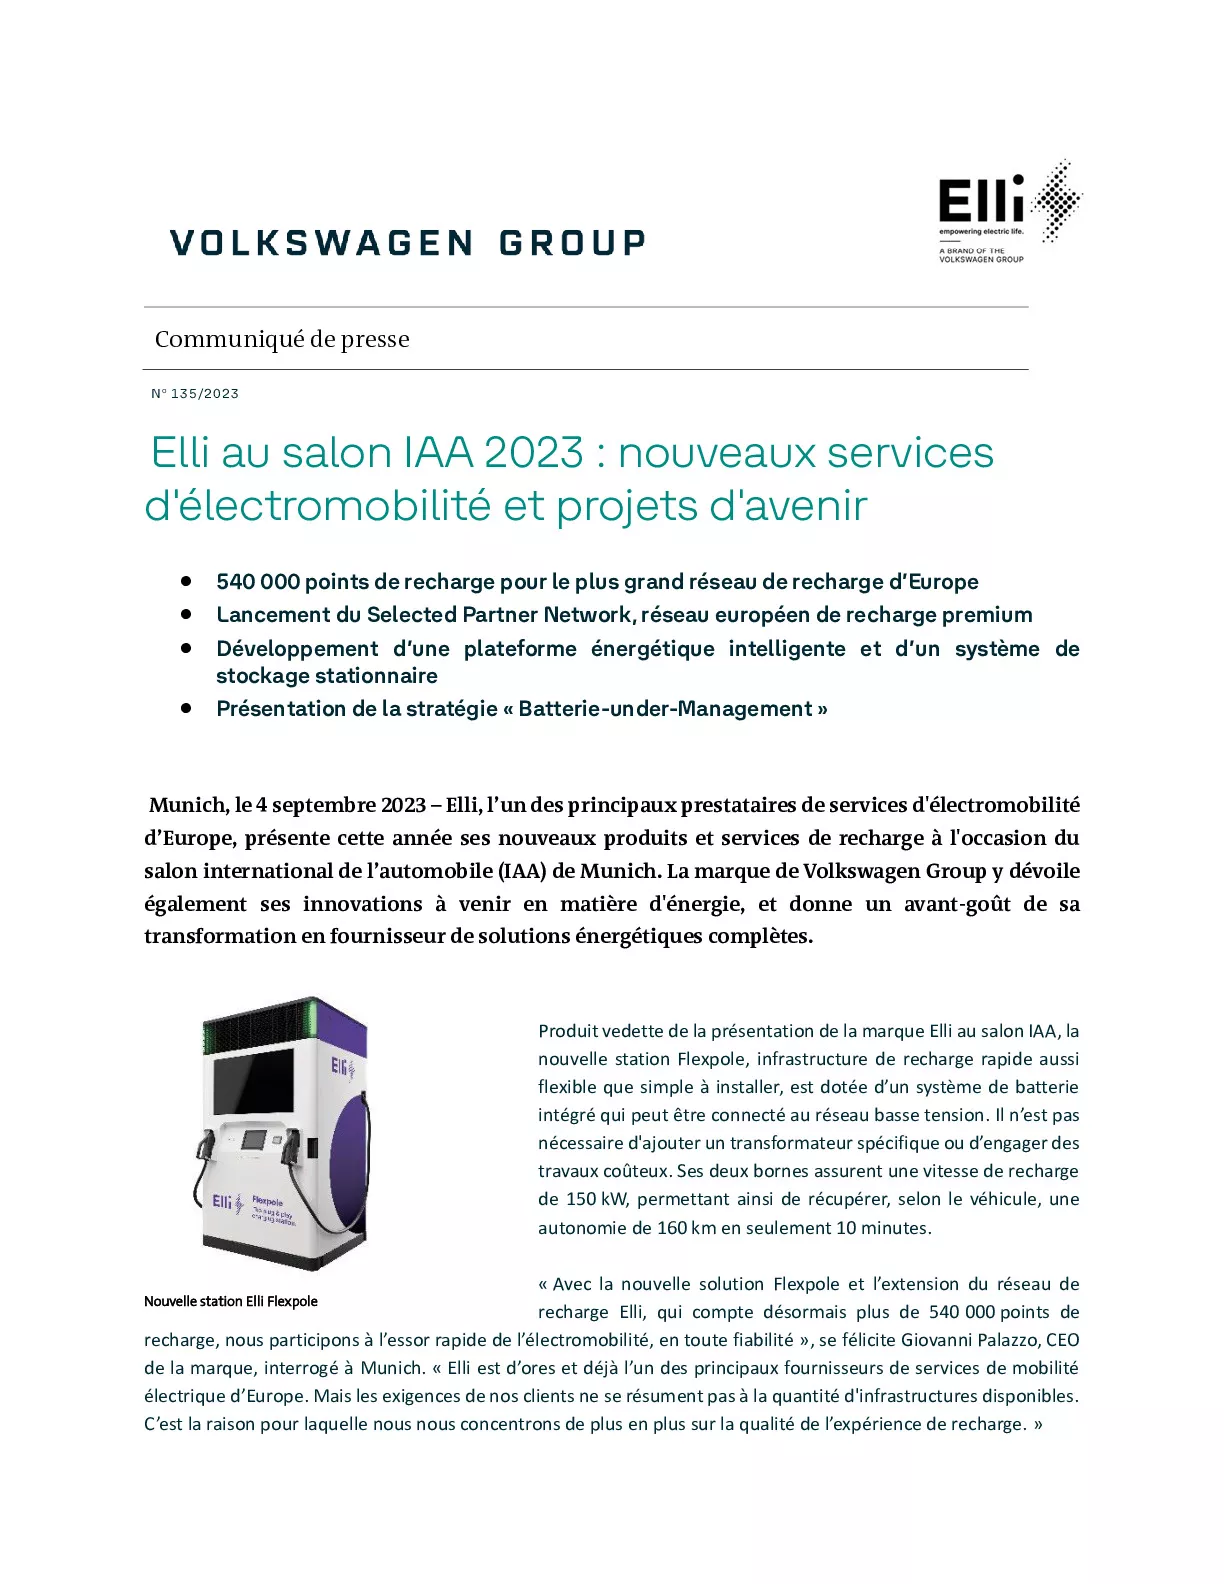 Elli au salon IAA 2023_nouveaux services d'électromobilité et projets d'avenir-pdf